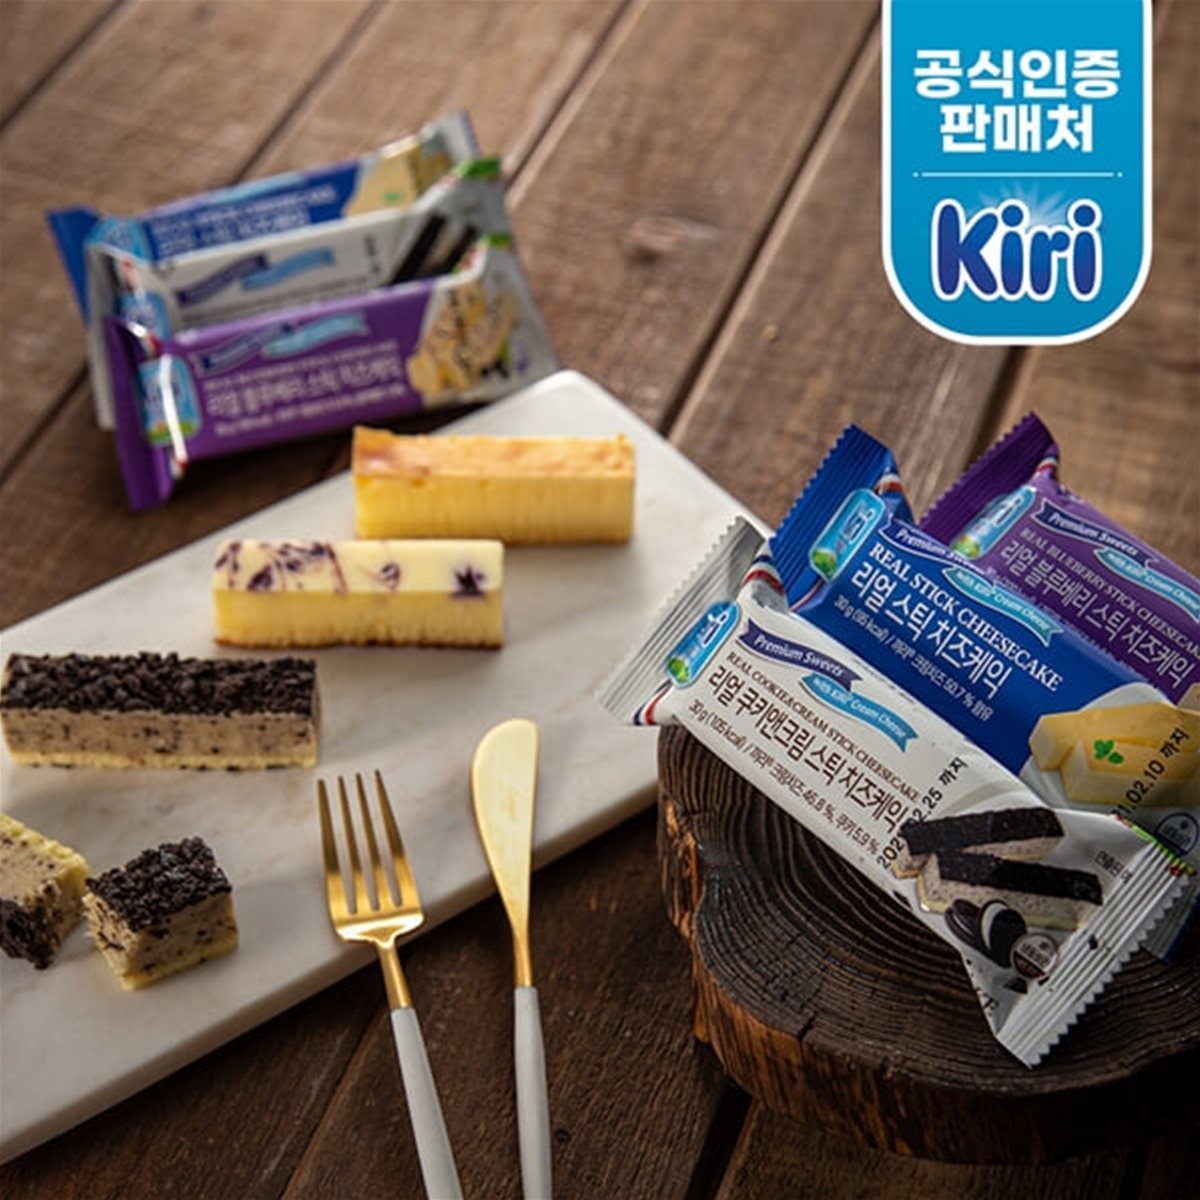 [끼리] 리얼 스틱 치즈케익 30g 쿠키앤크림 6개(Cookie_cake_6)